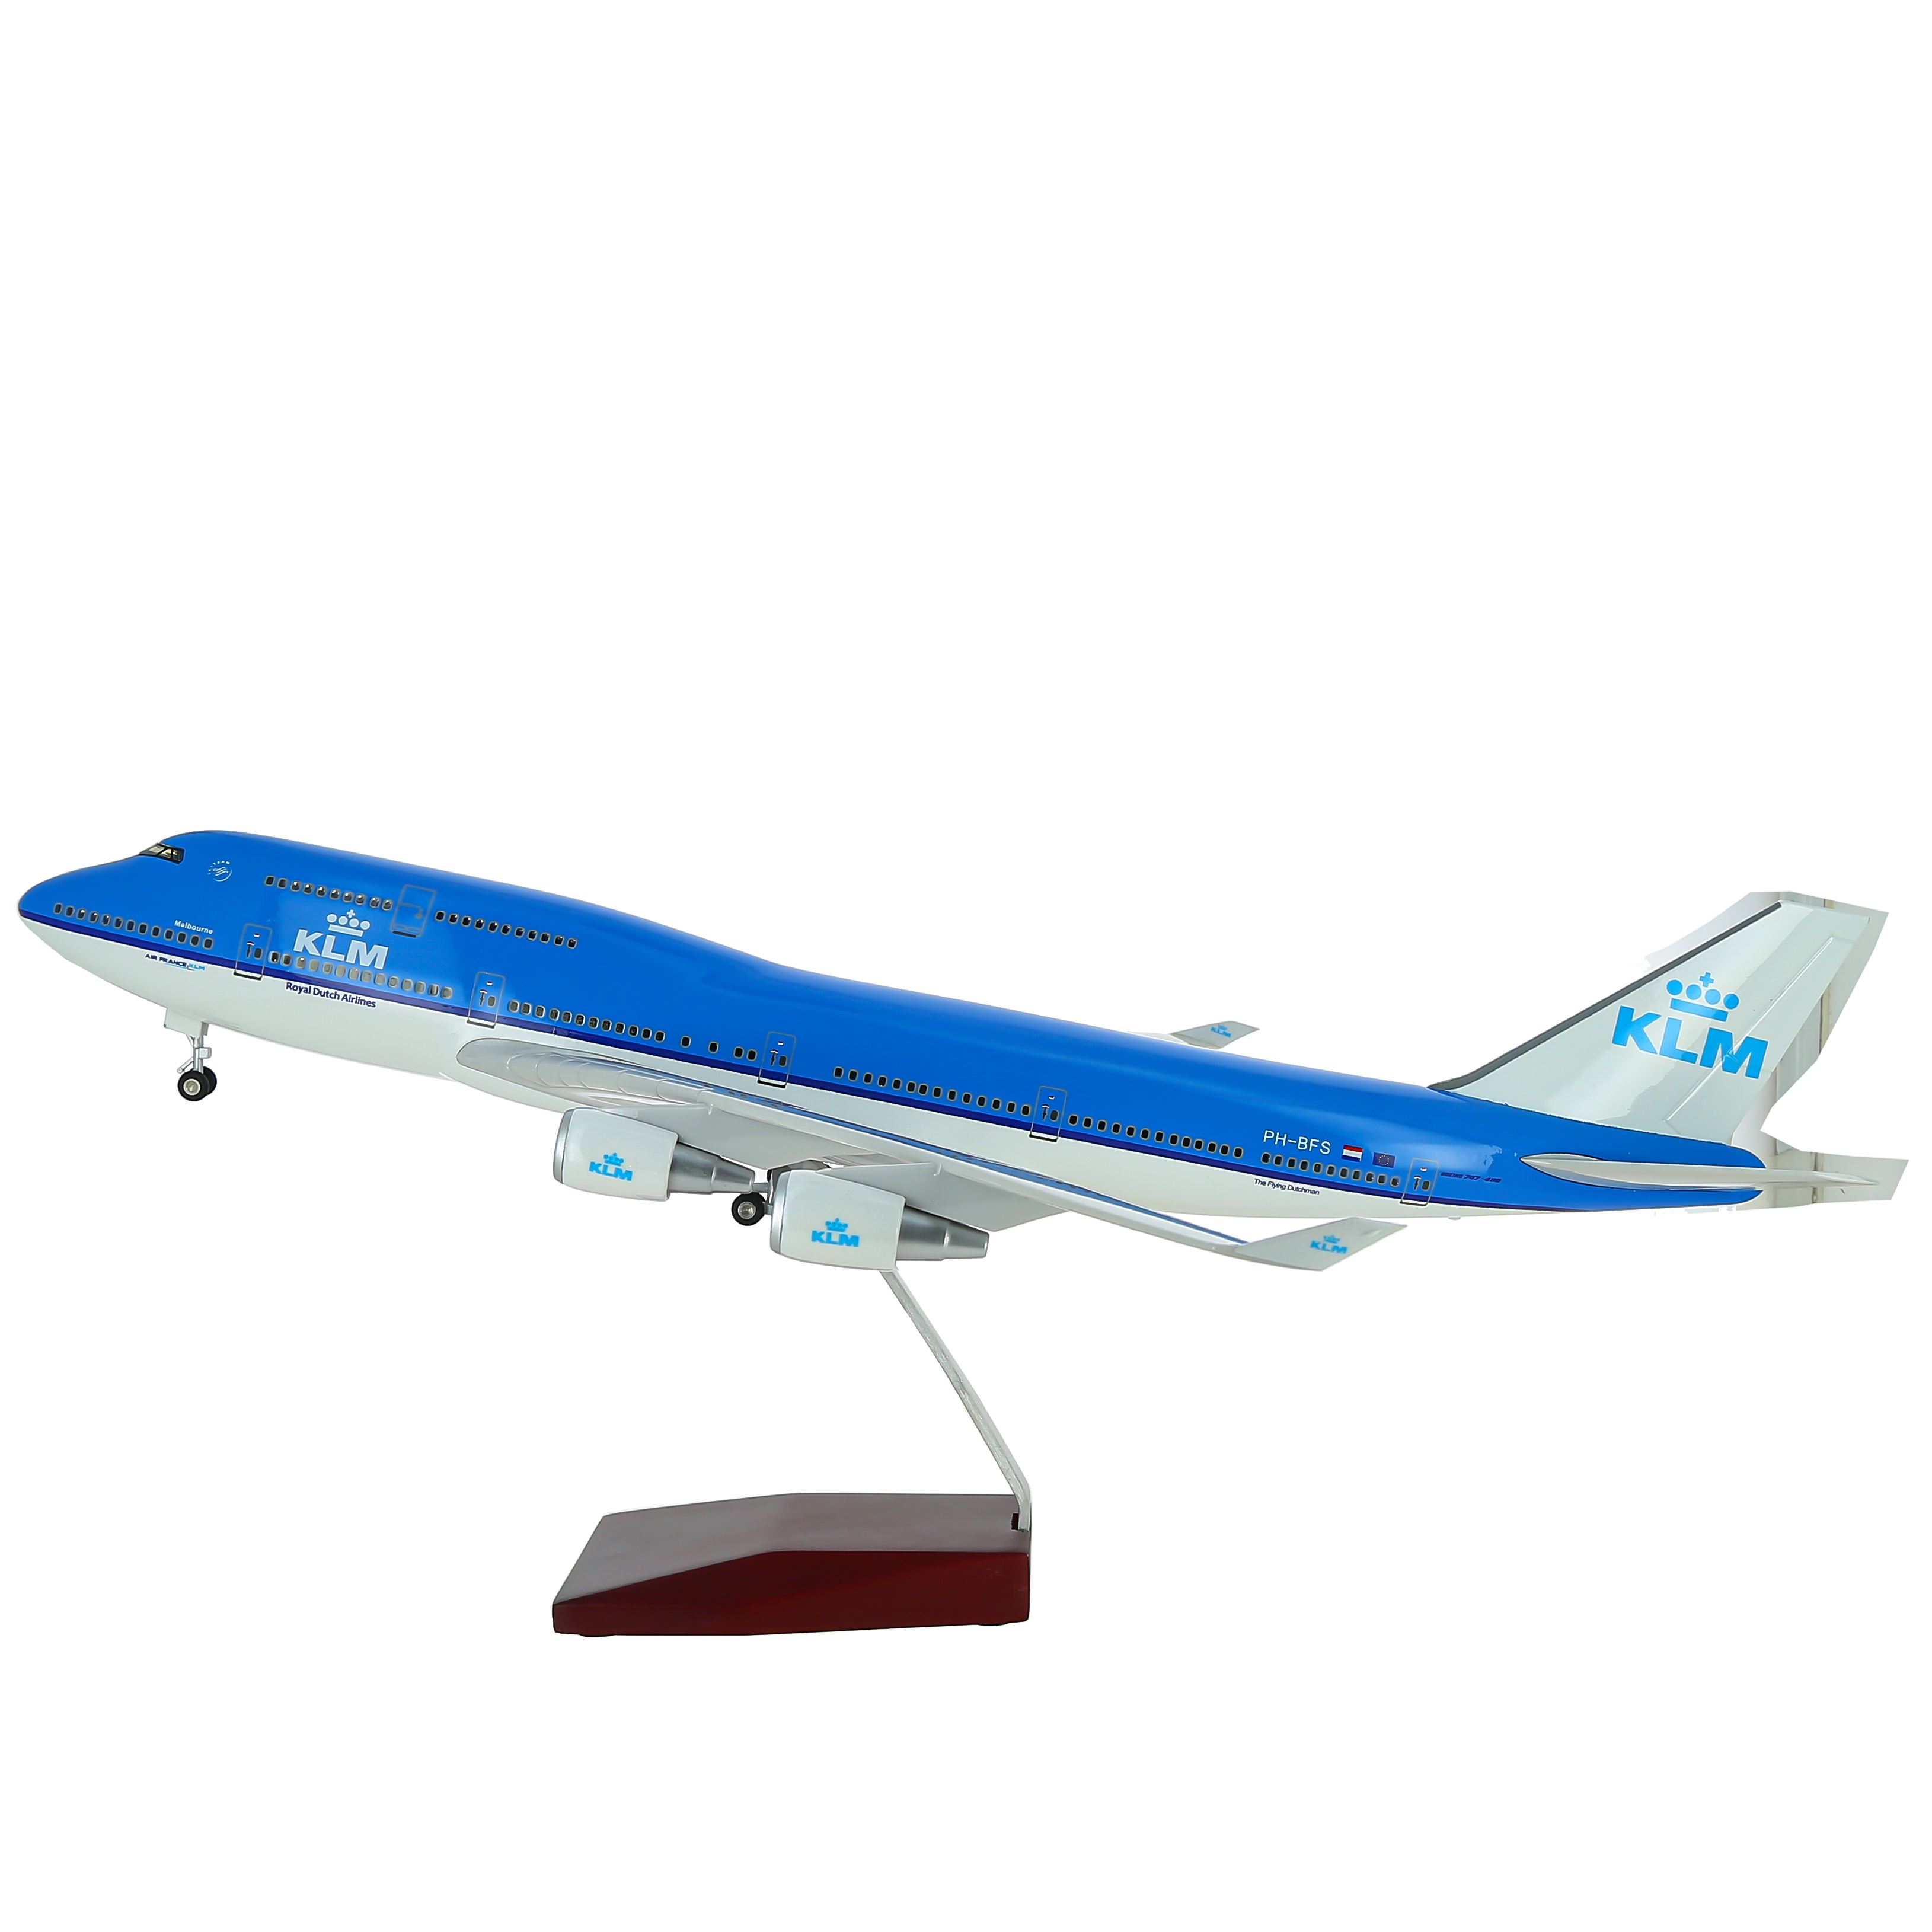     747  KLM,   .  47 . # 5 hobbyplus.ru